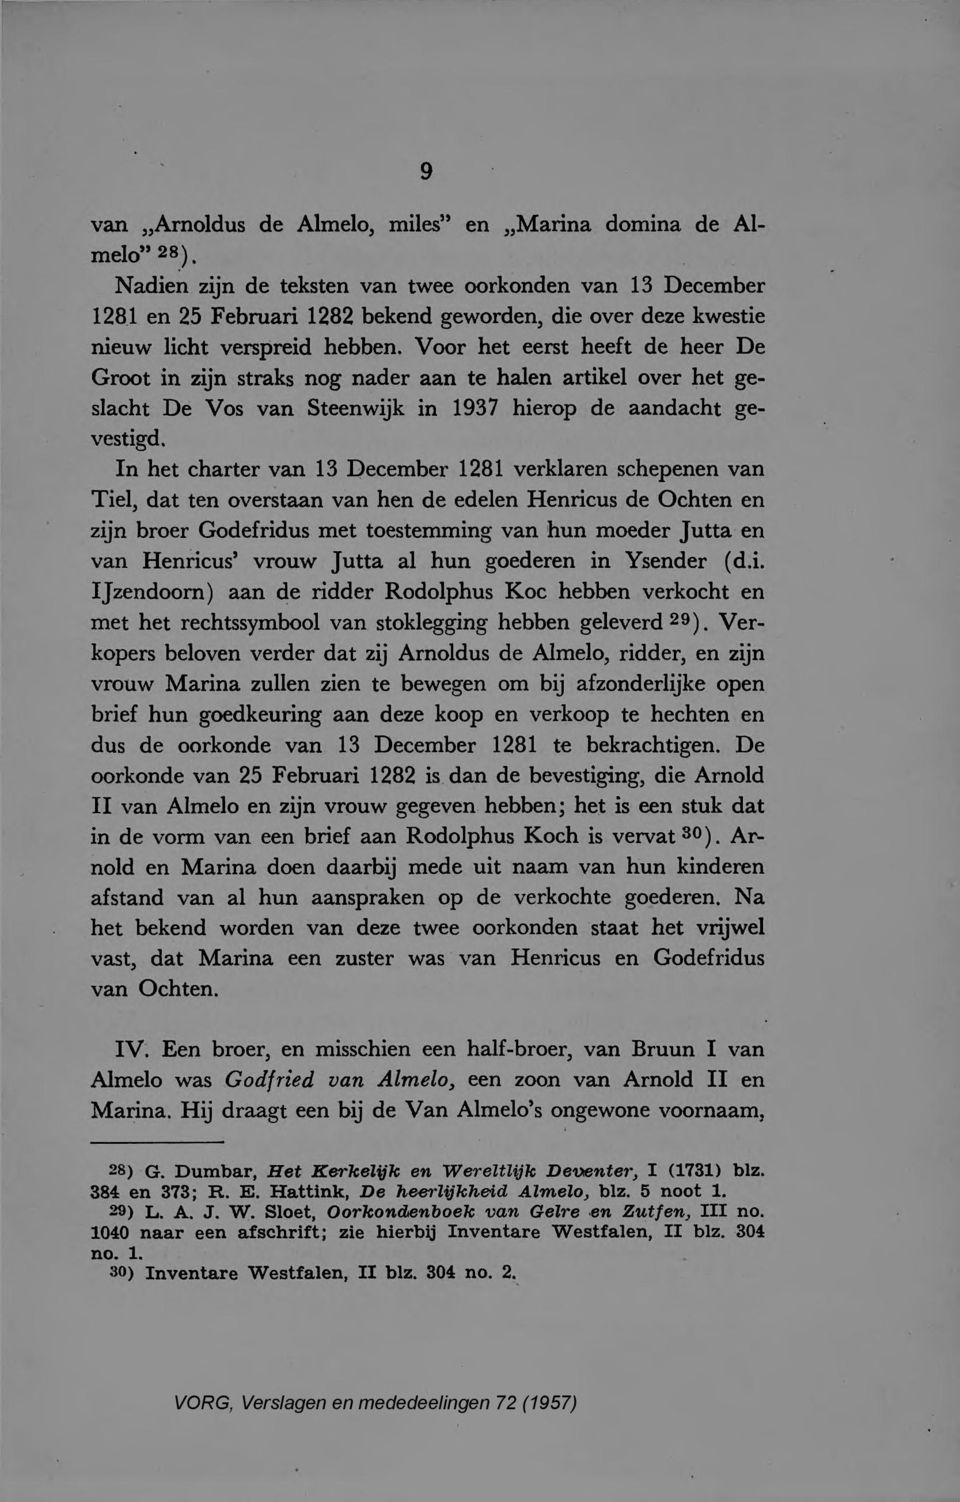 Voor het eerst heeft de heer De Groot in zijn straks nog nader aan te halen artikelover het geslacht De Vos van Steenwijk in 1937 hierop de aandacht gevestigd.